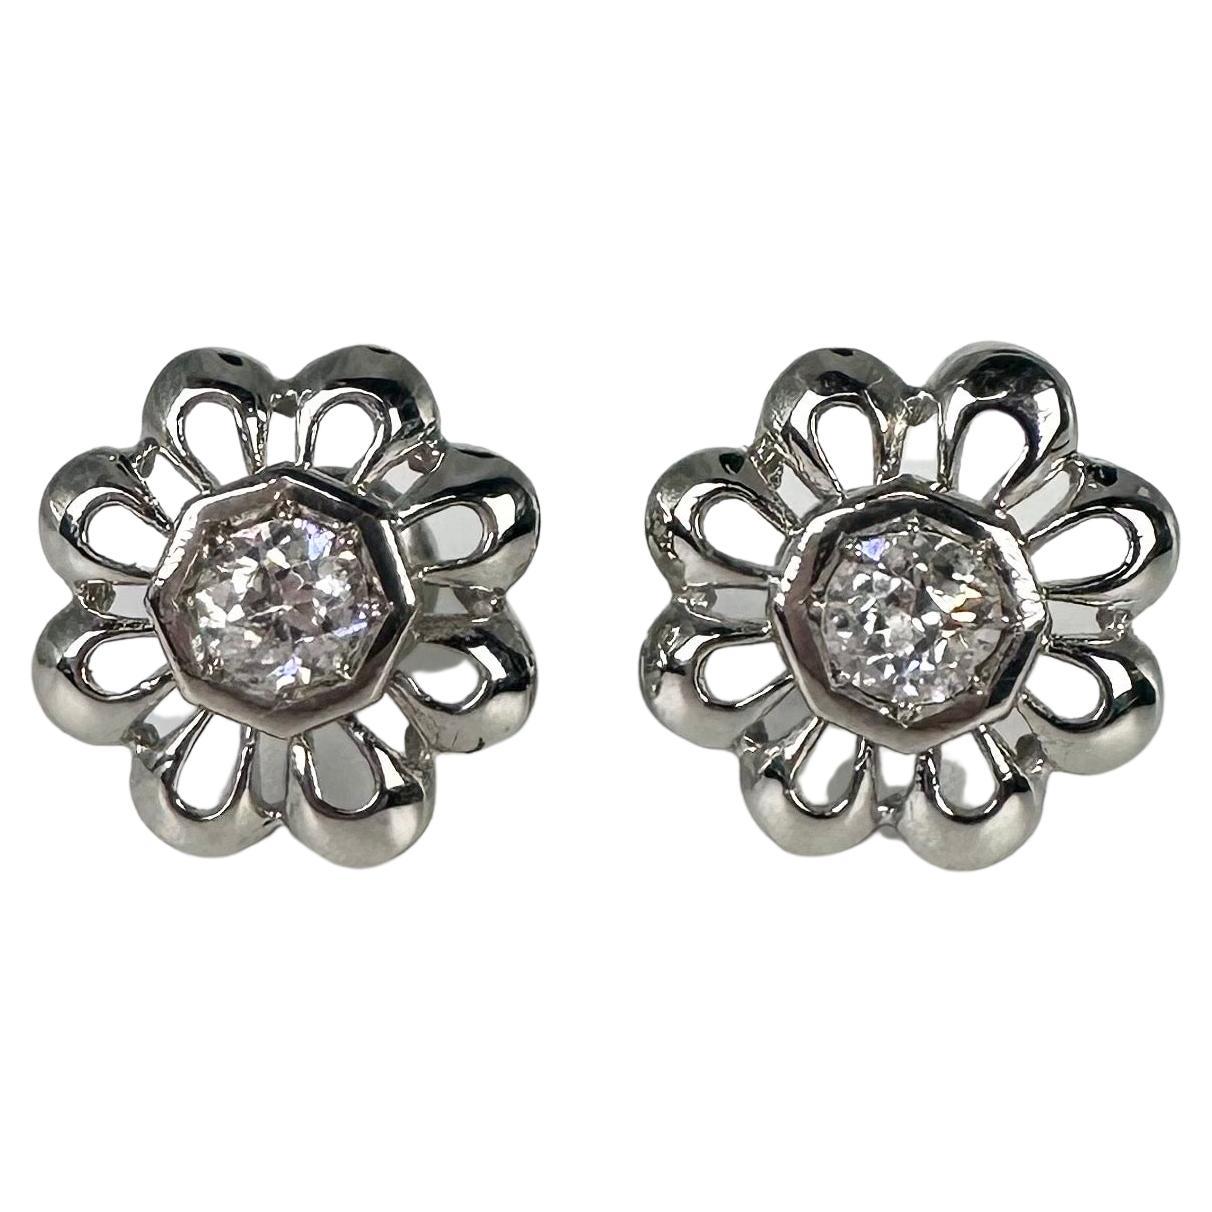 Floral diamond studs 14KT screw backs earrings Flower earrings